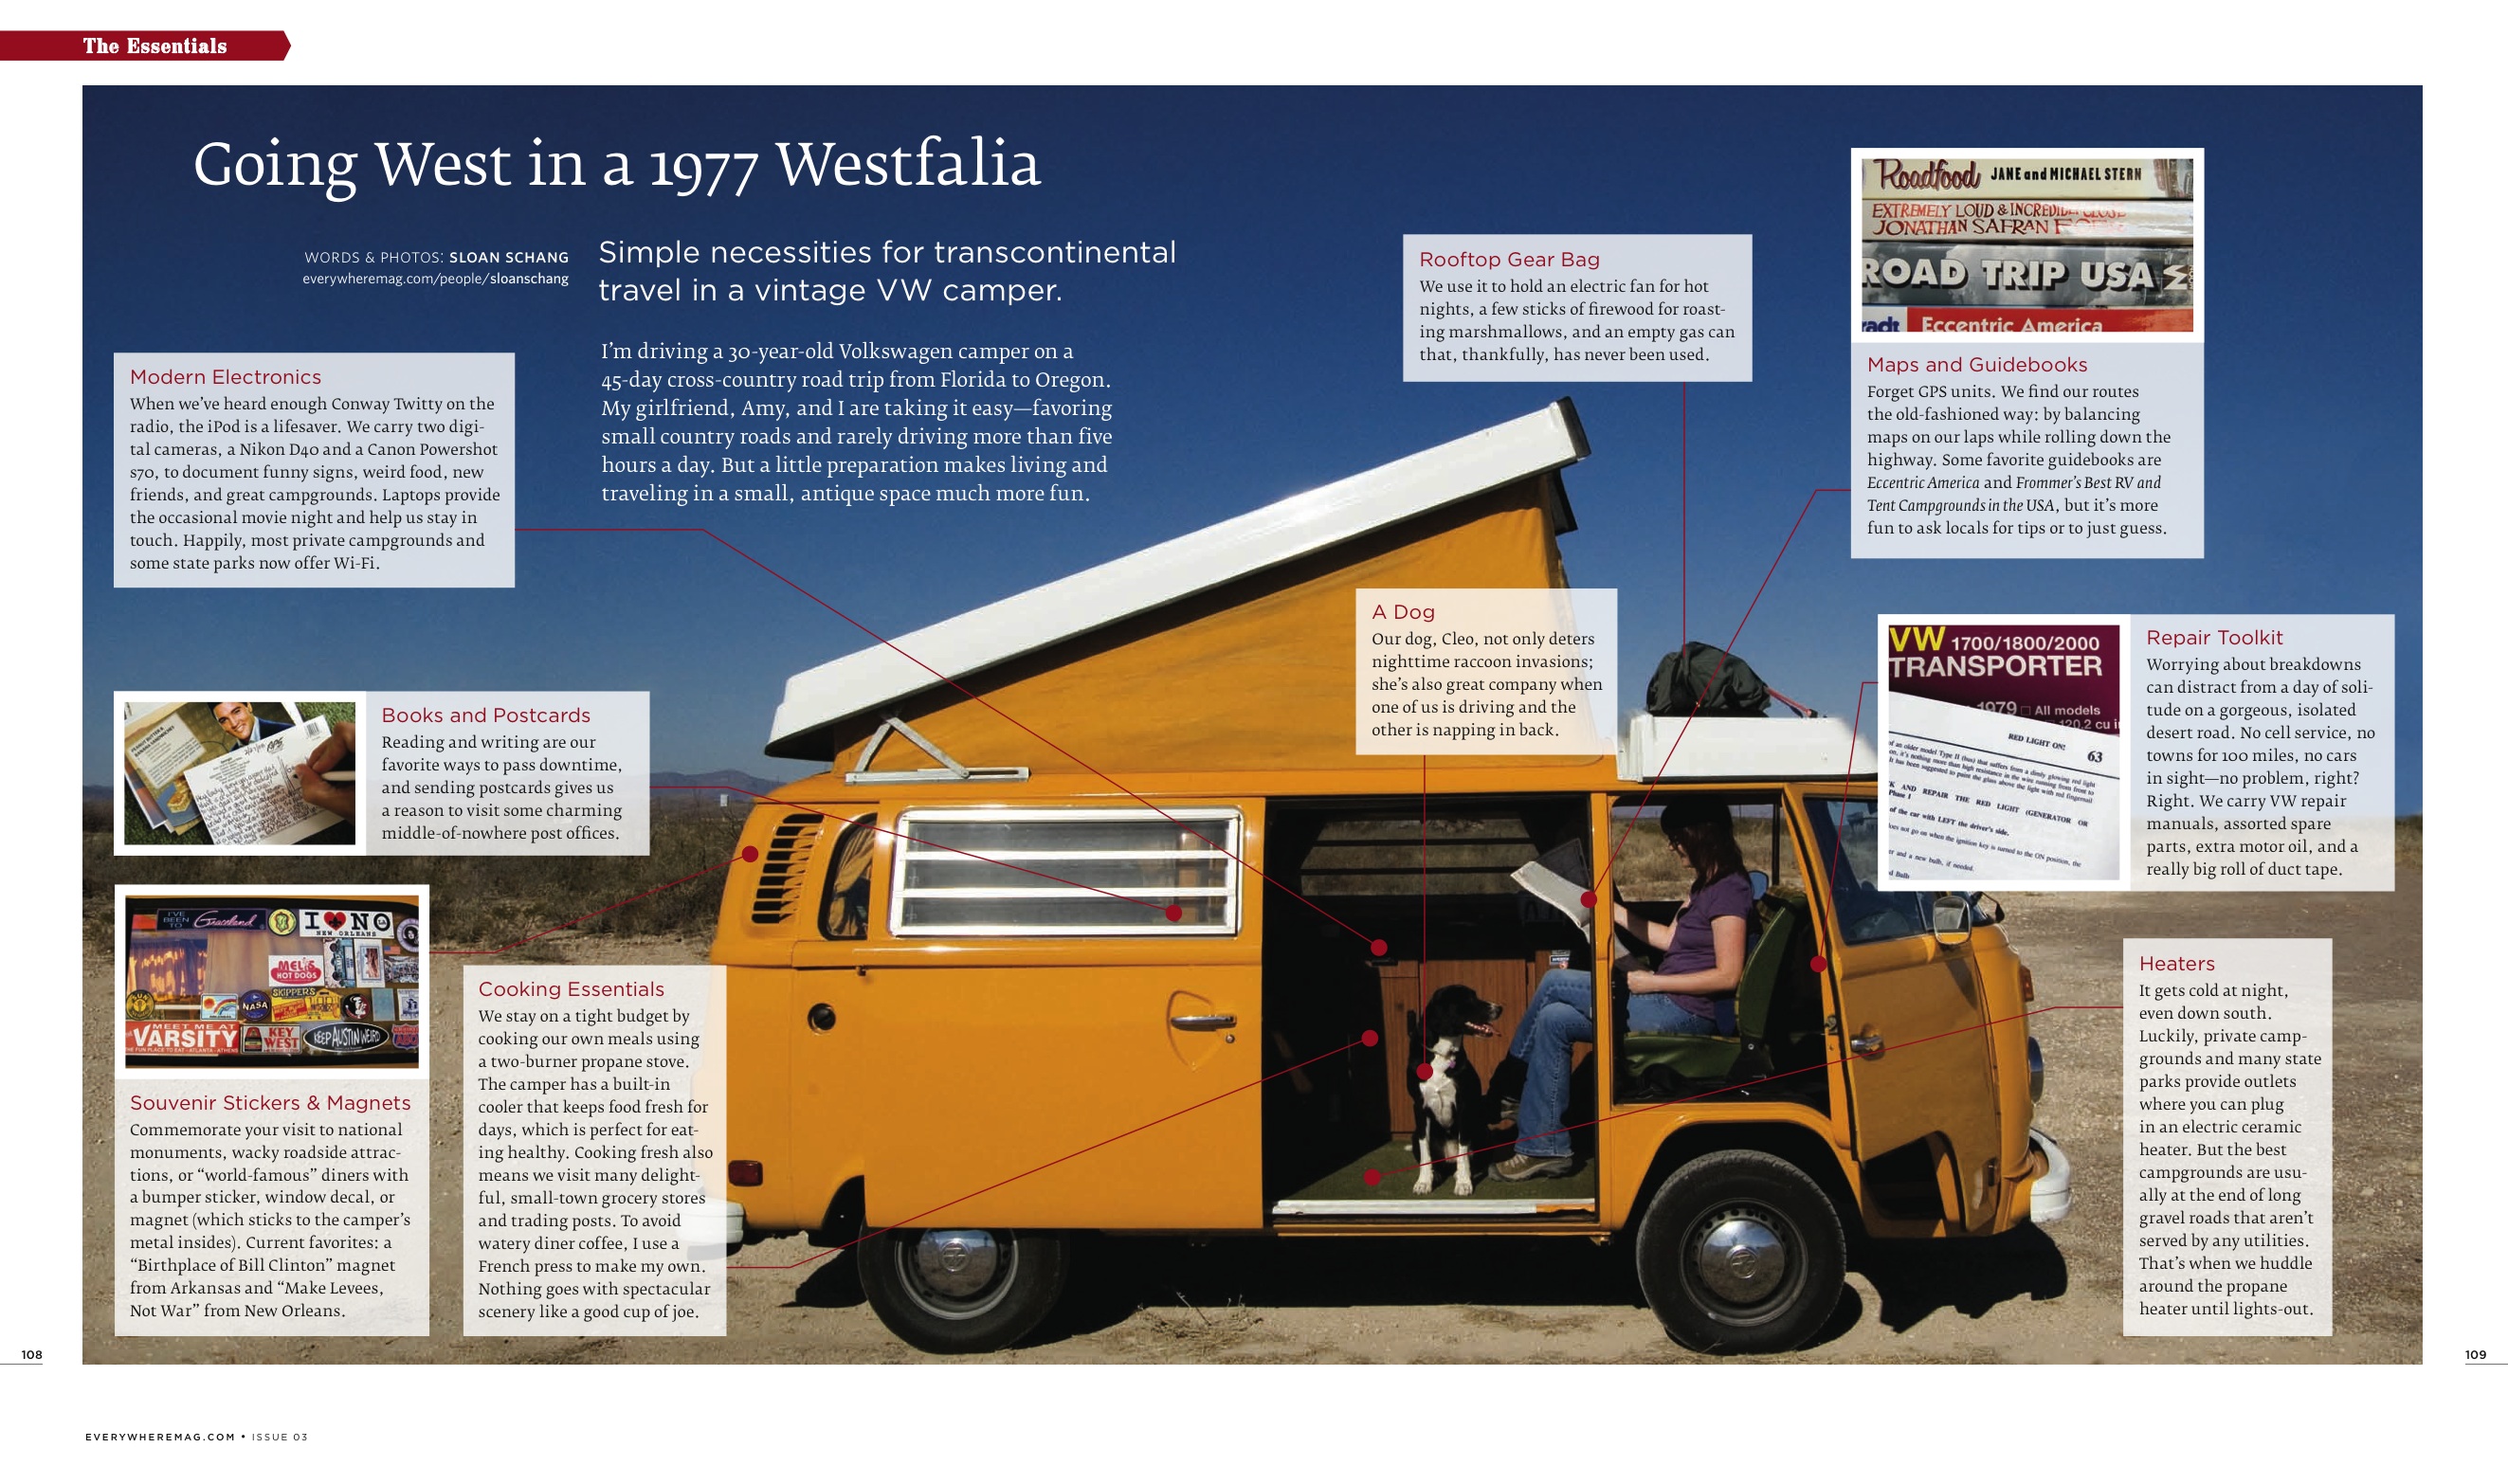 pour emballer un camping-car Volkswagen Westfalia vintage pour les voyages en Trans-Amérique: